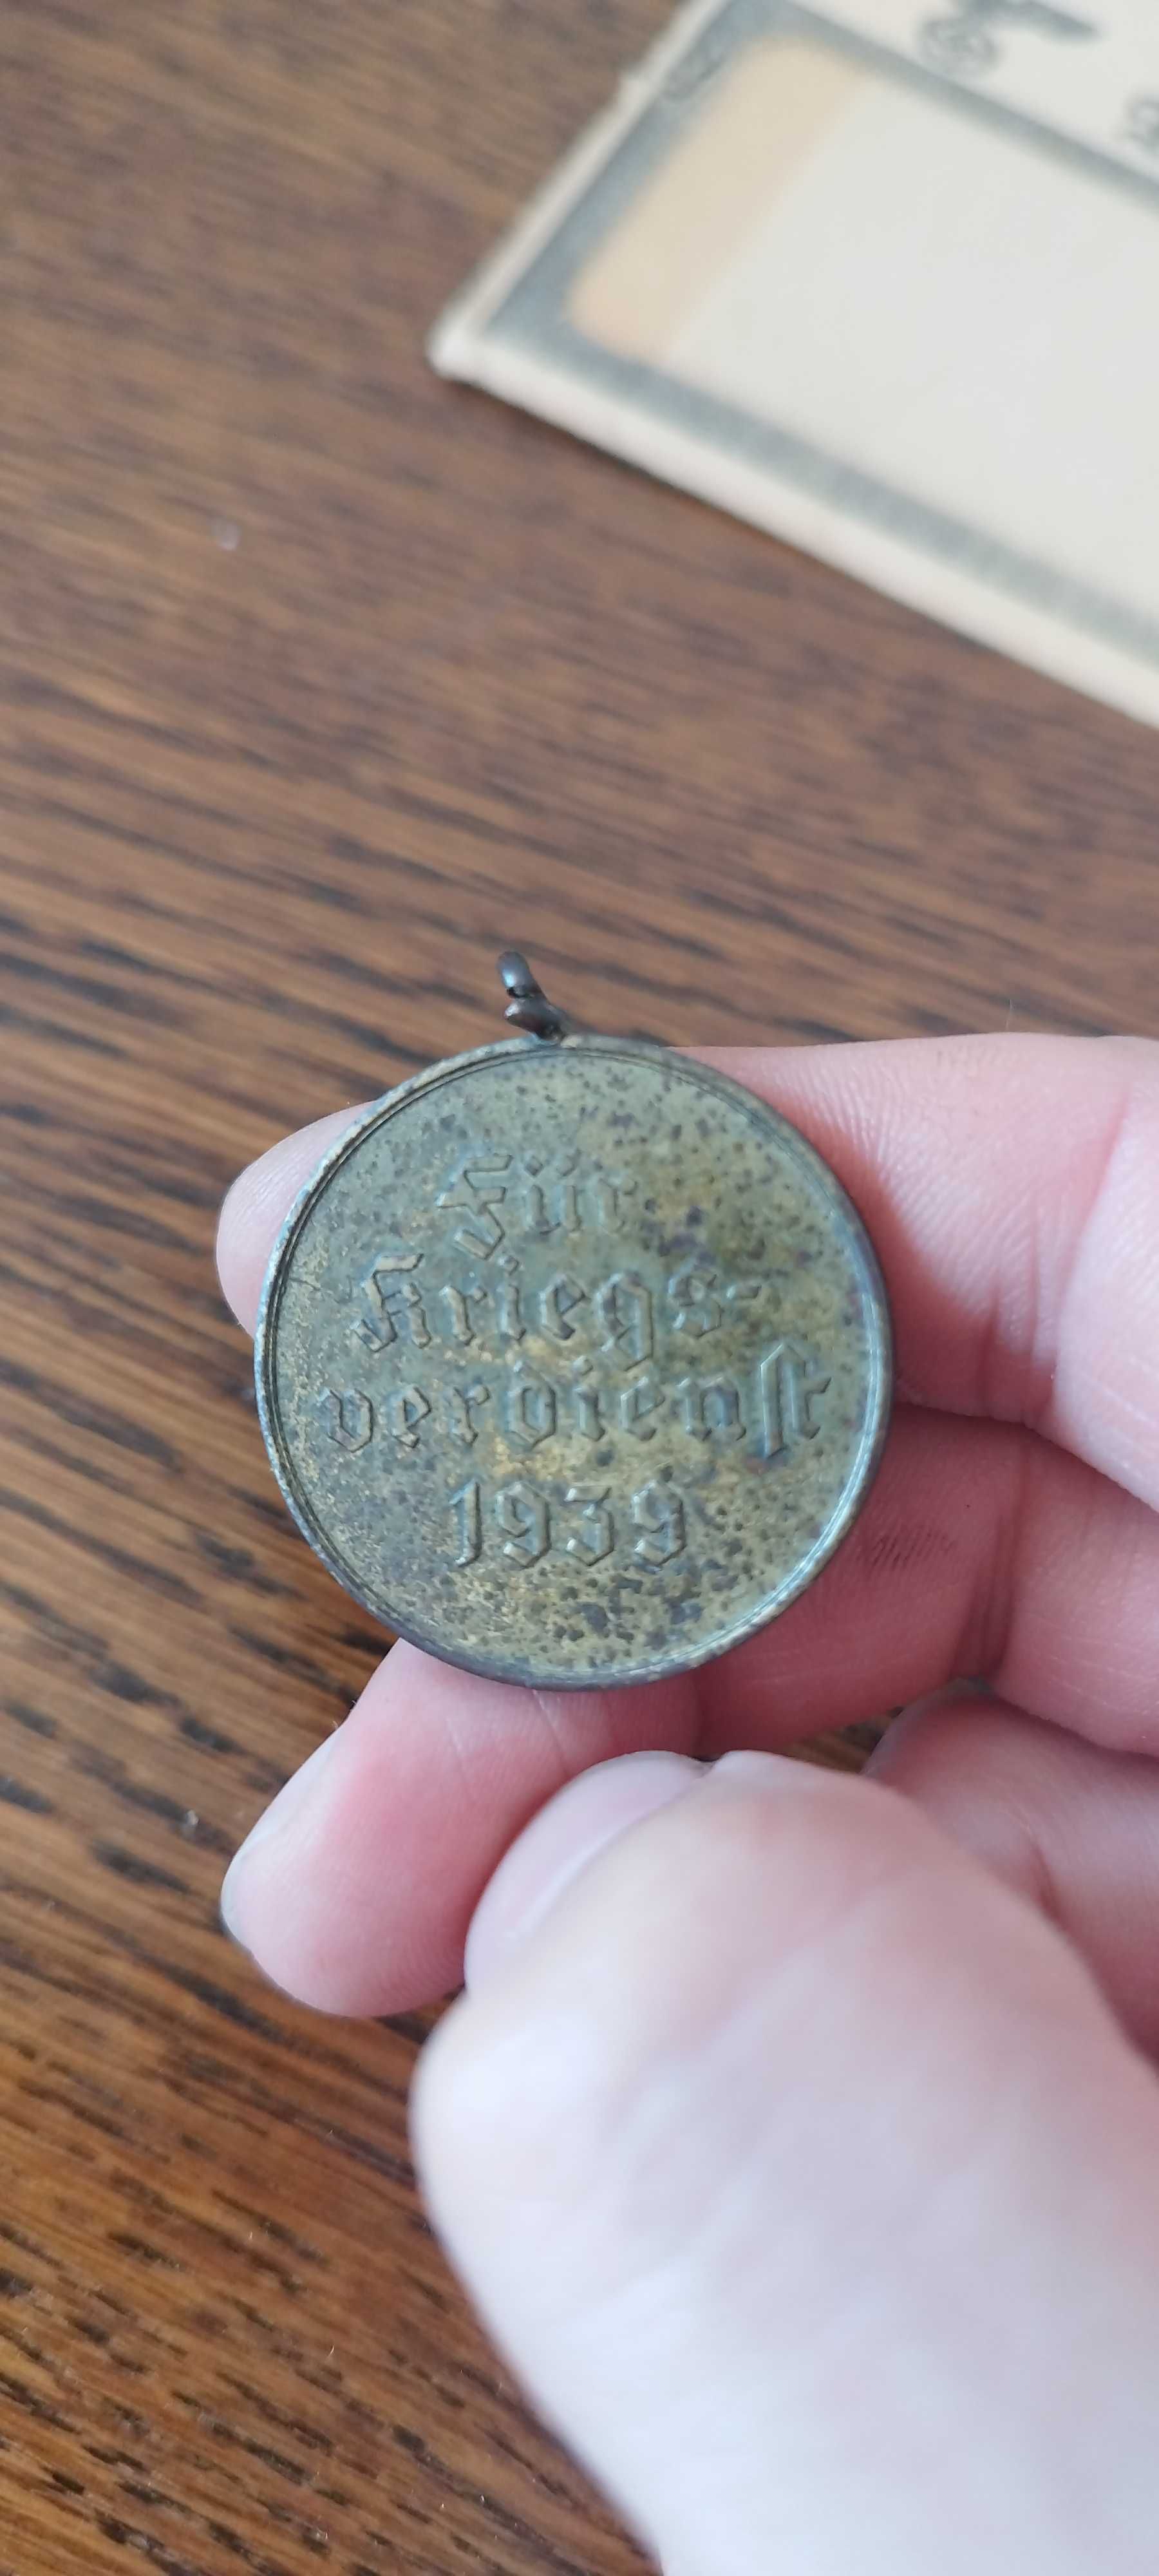 Oryginalny medal Kriegsverdienst 1939 za kampanię wojenną w Polsce!